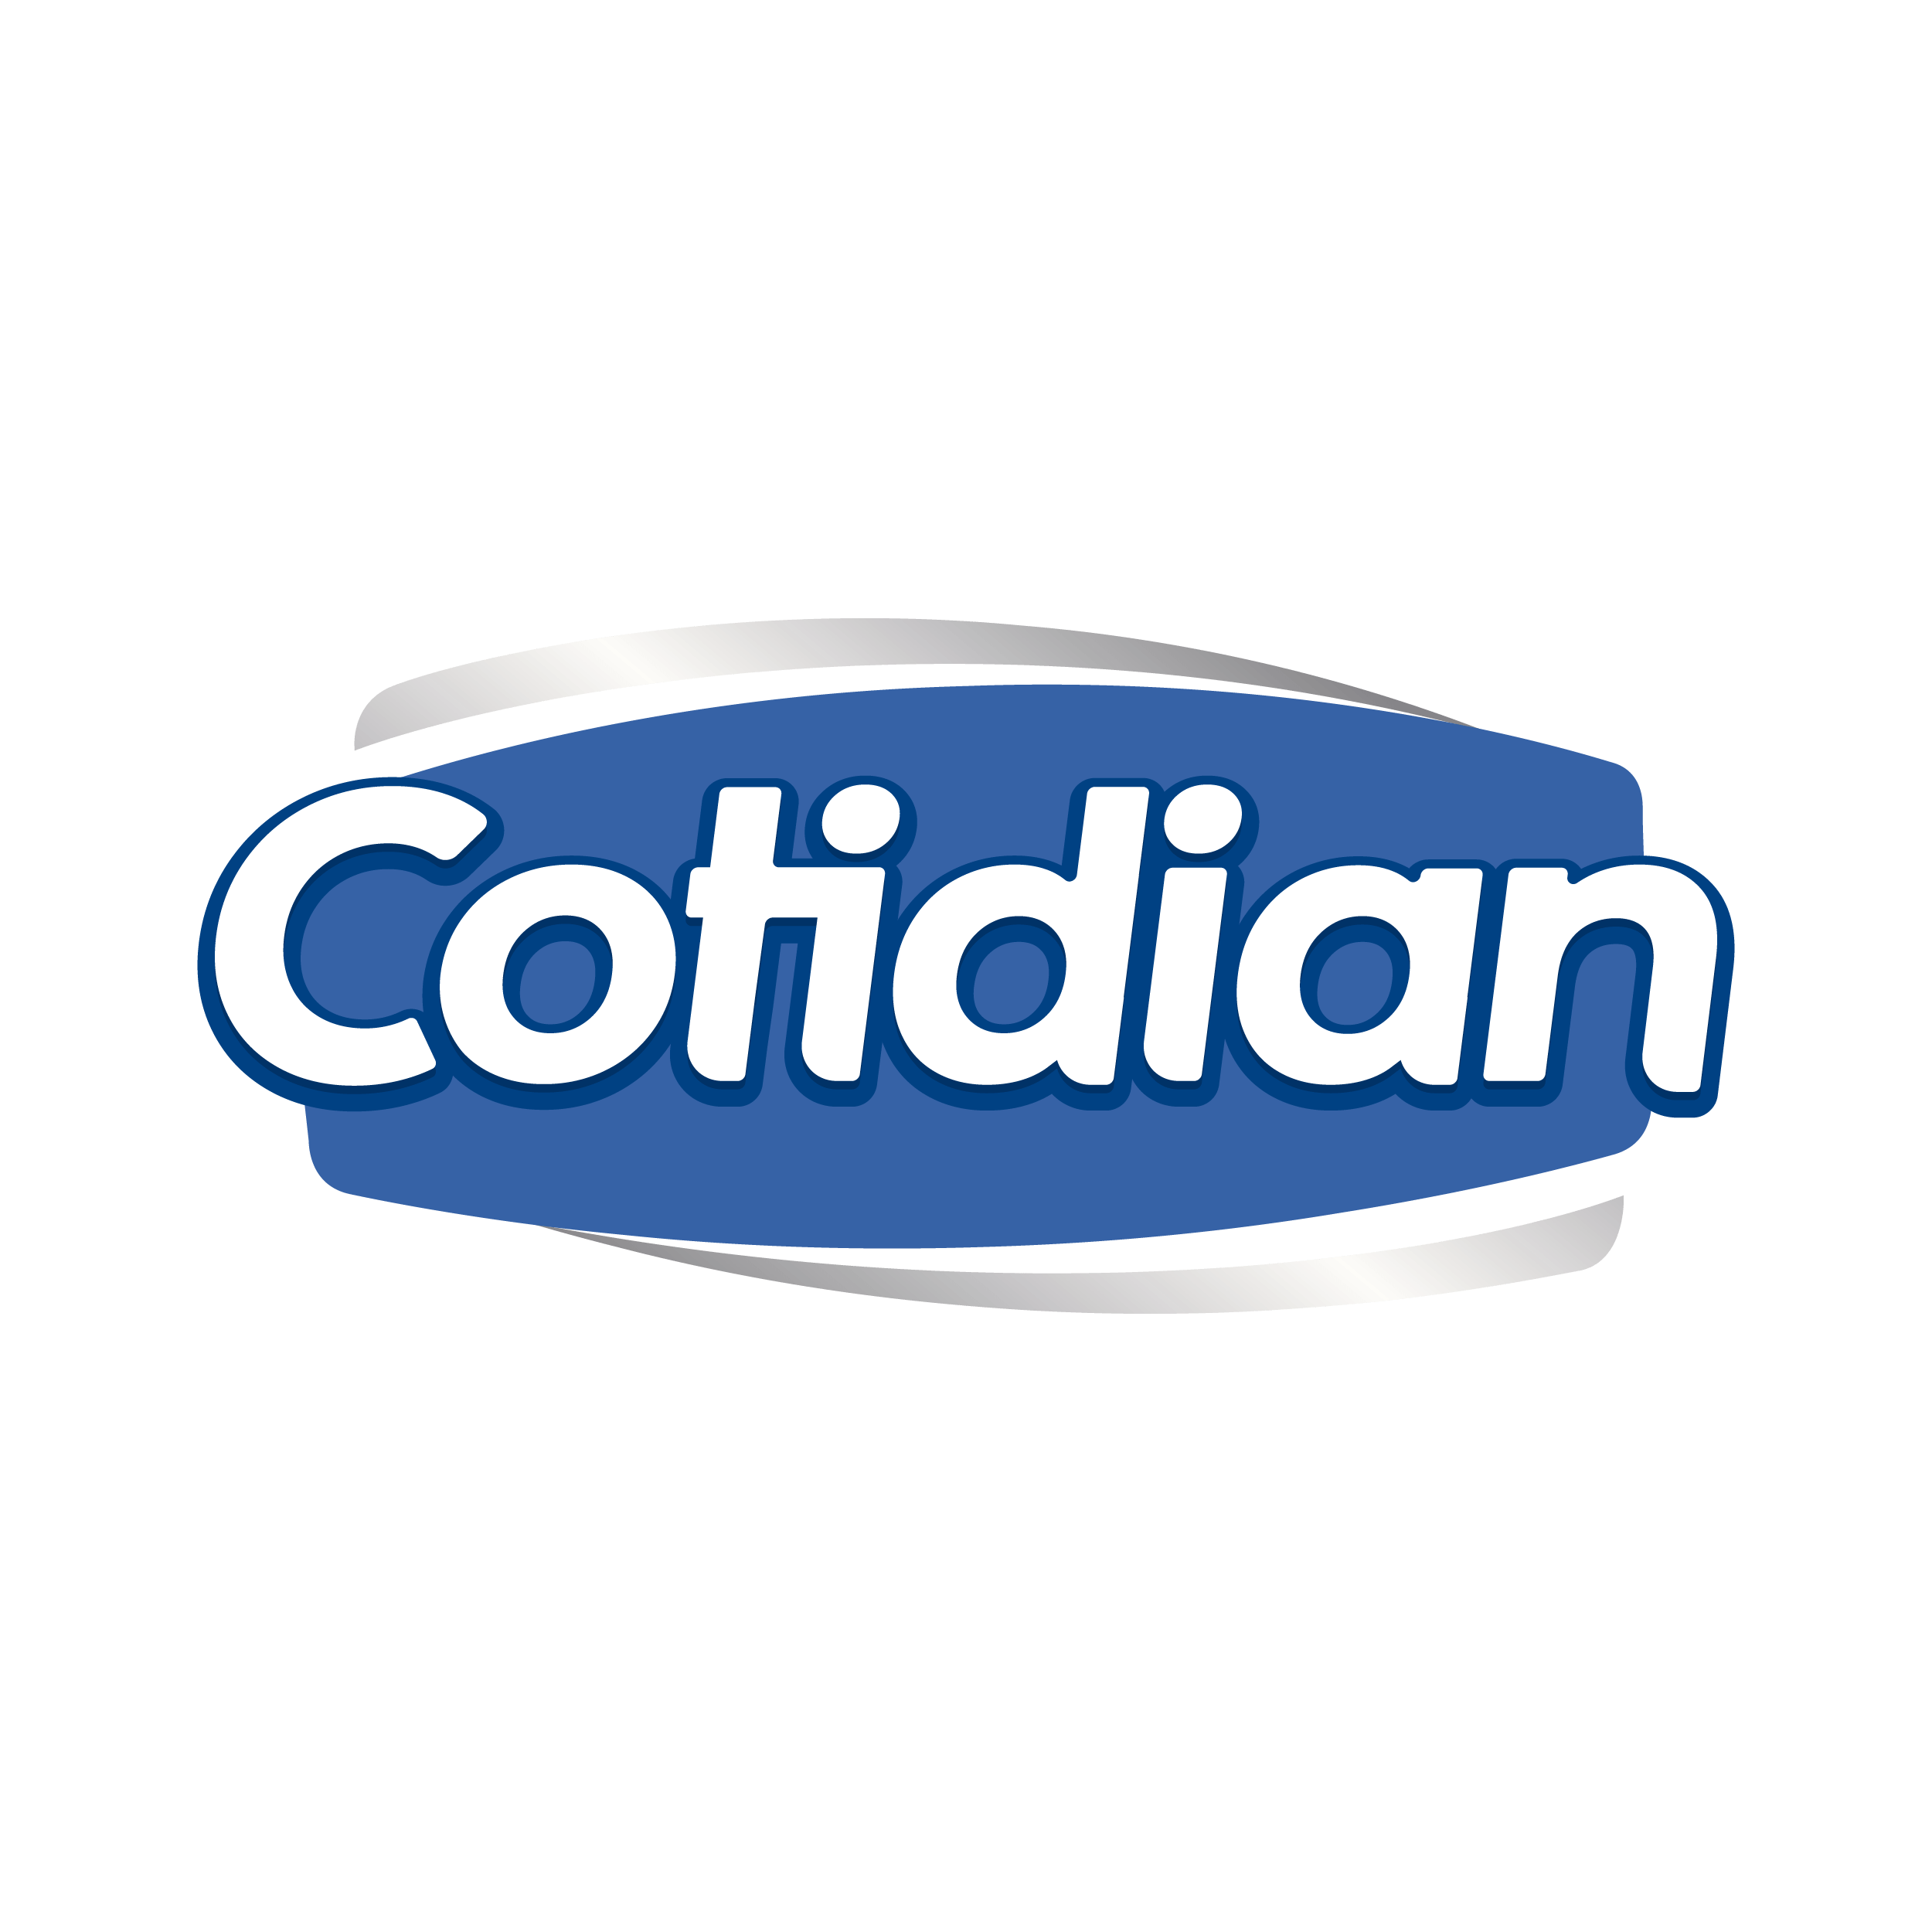 logo cotidian